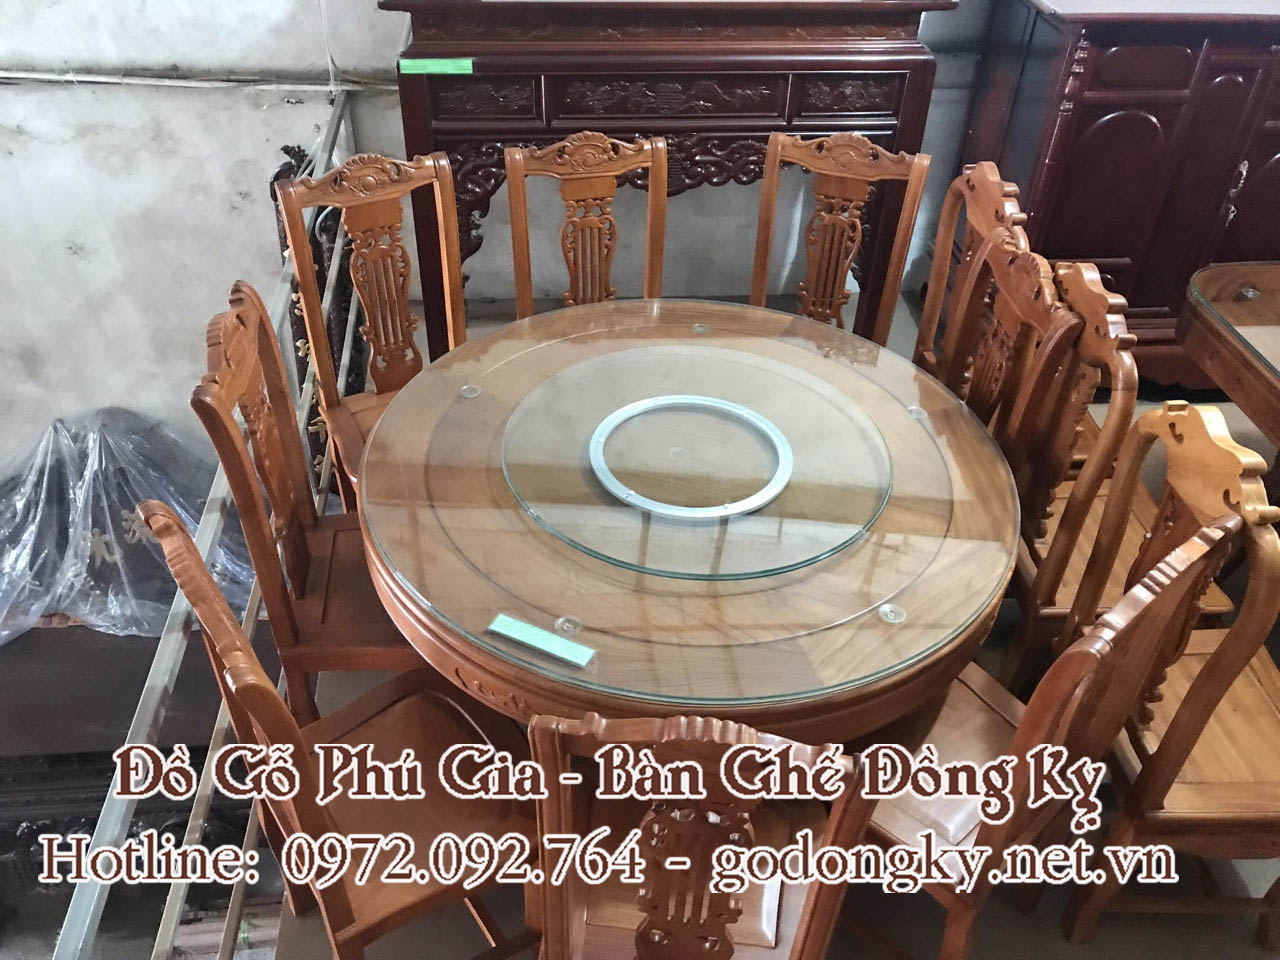 Nội, ngoại thất: Tổng hợp các mẫu bàn ghế phòng ăn mặt tròn đồ gỗ đồng kỵ 17